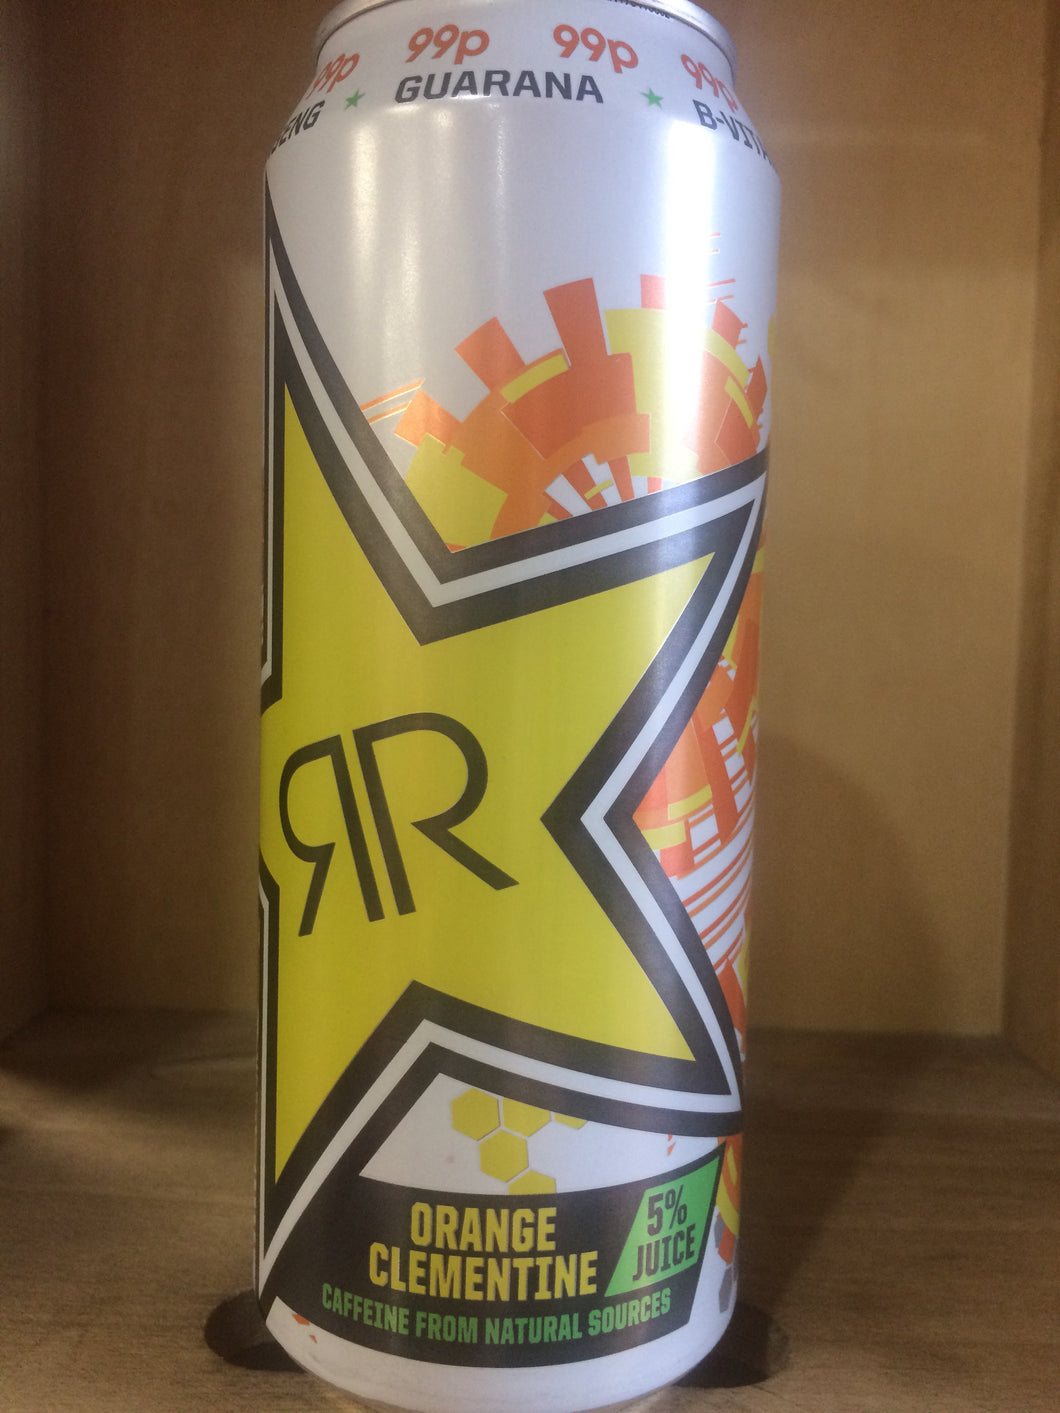 Rockstar First Start Orange Clementine Energy Drink Can 500ml